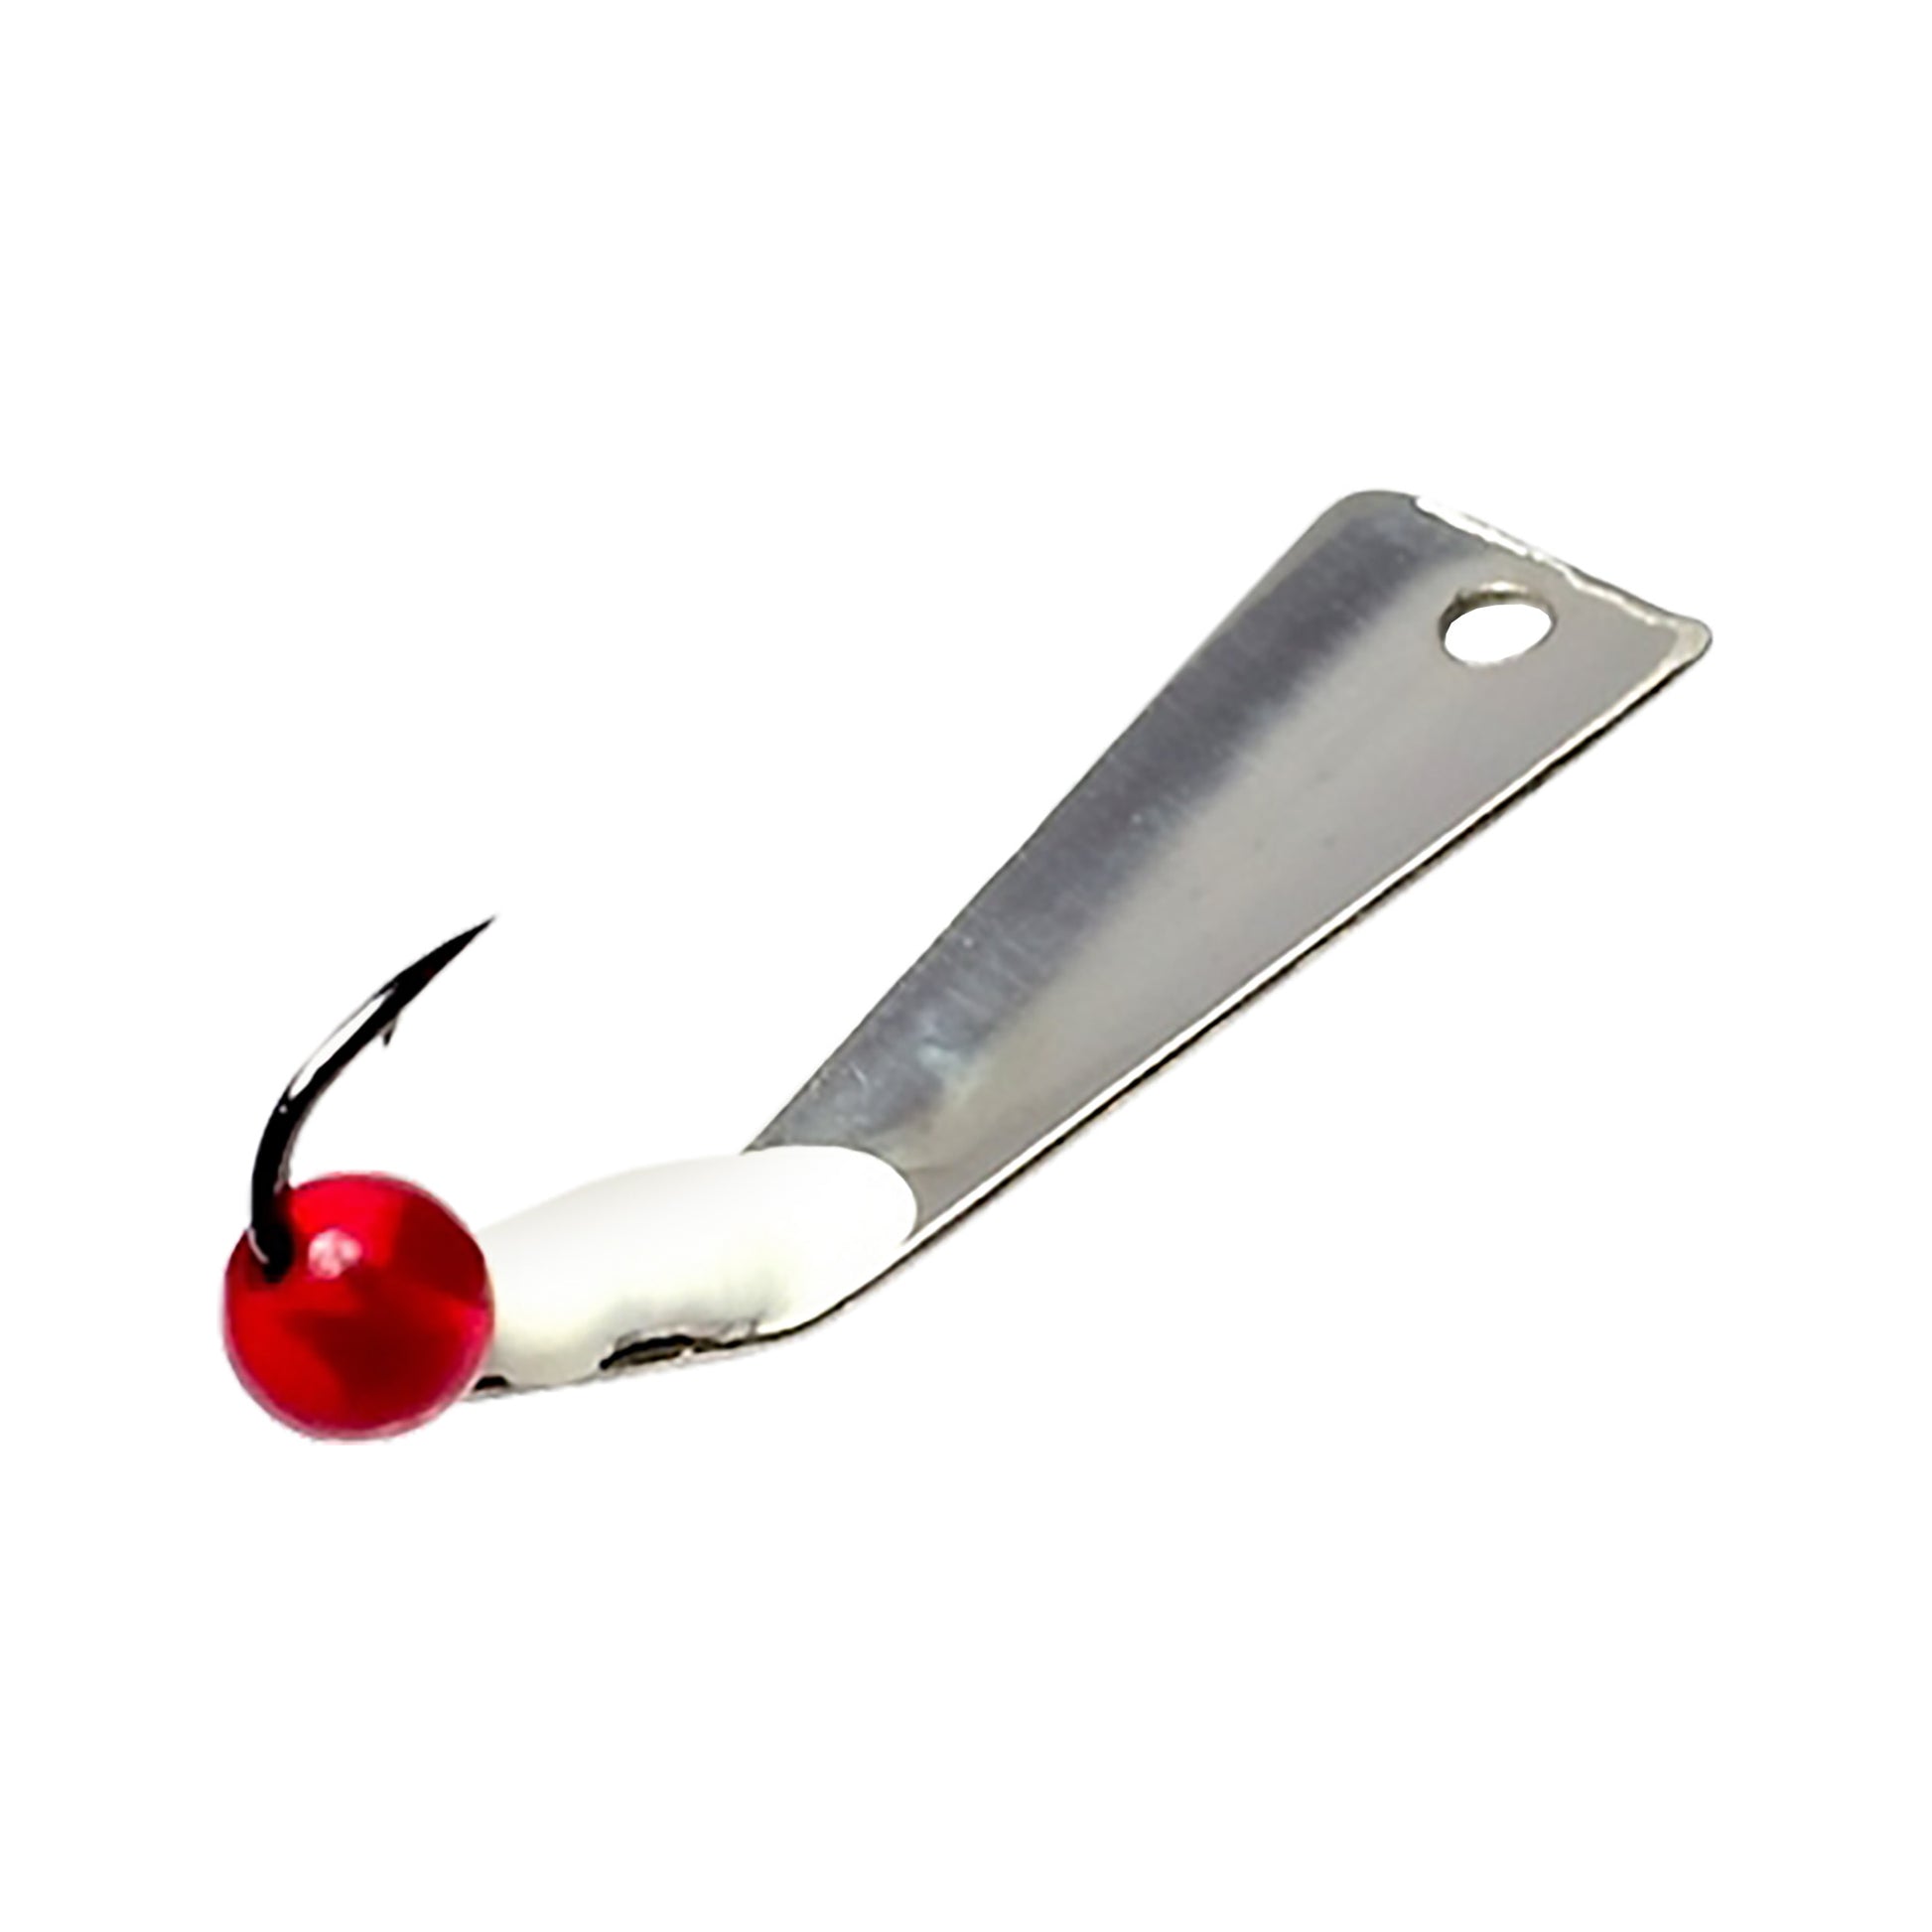 McGathy's Hooks Slab Grabber - Fan Cut - Stainless Steel - Red